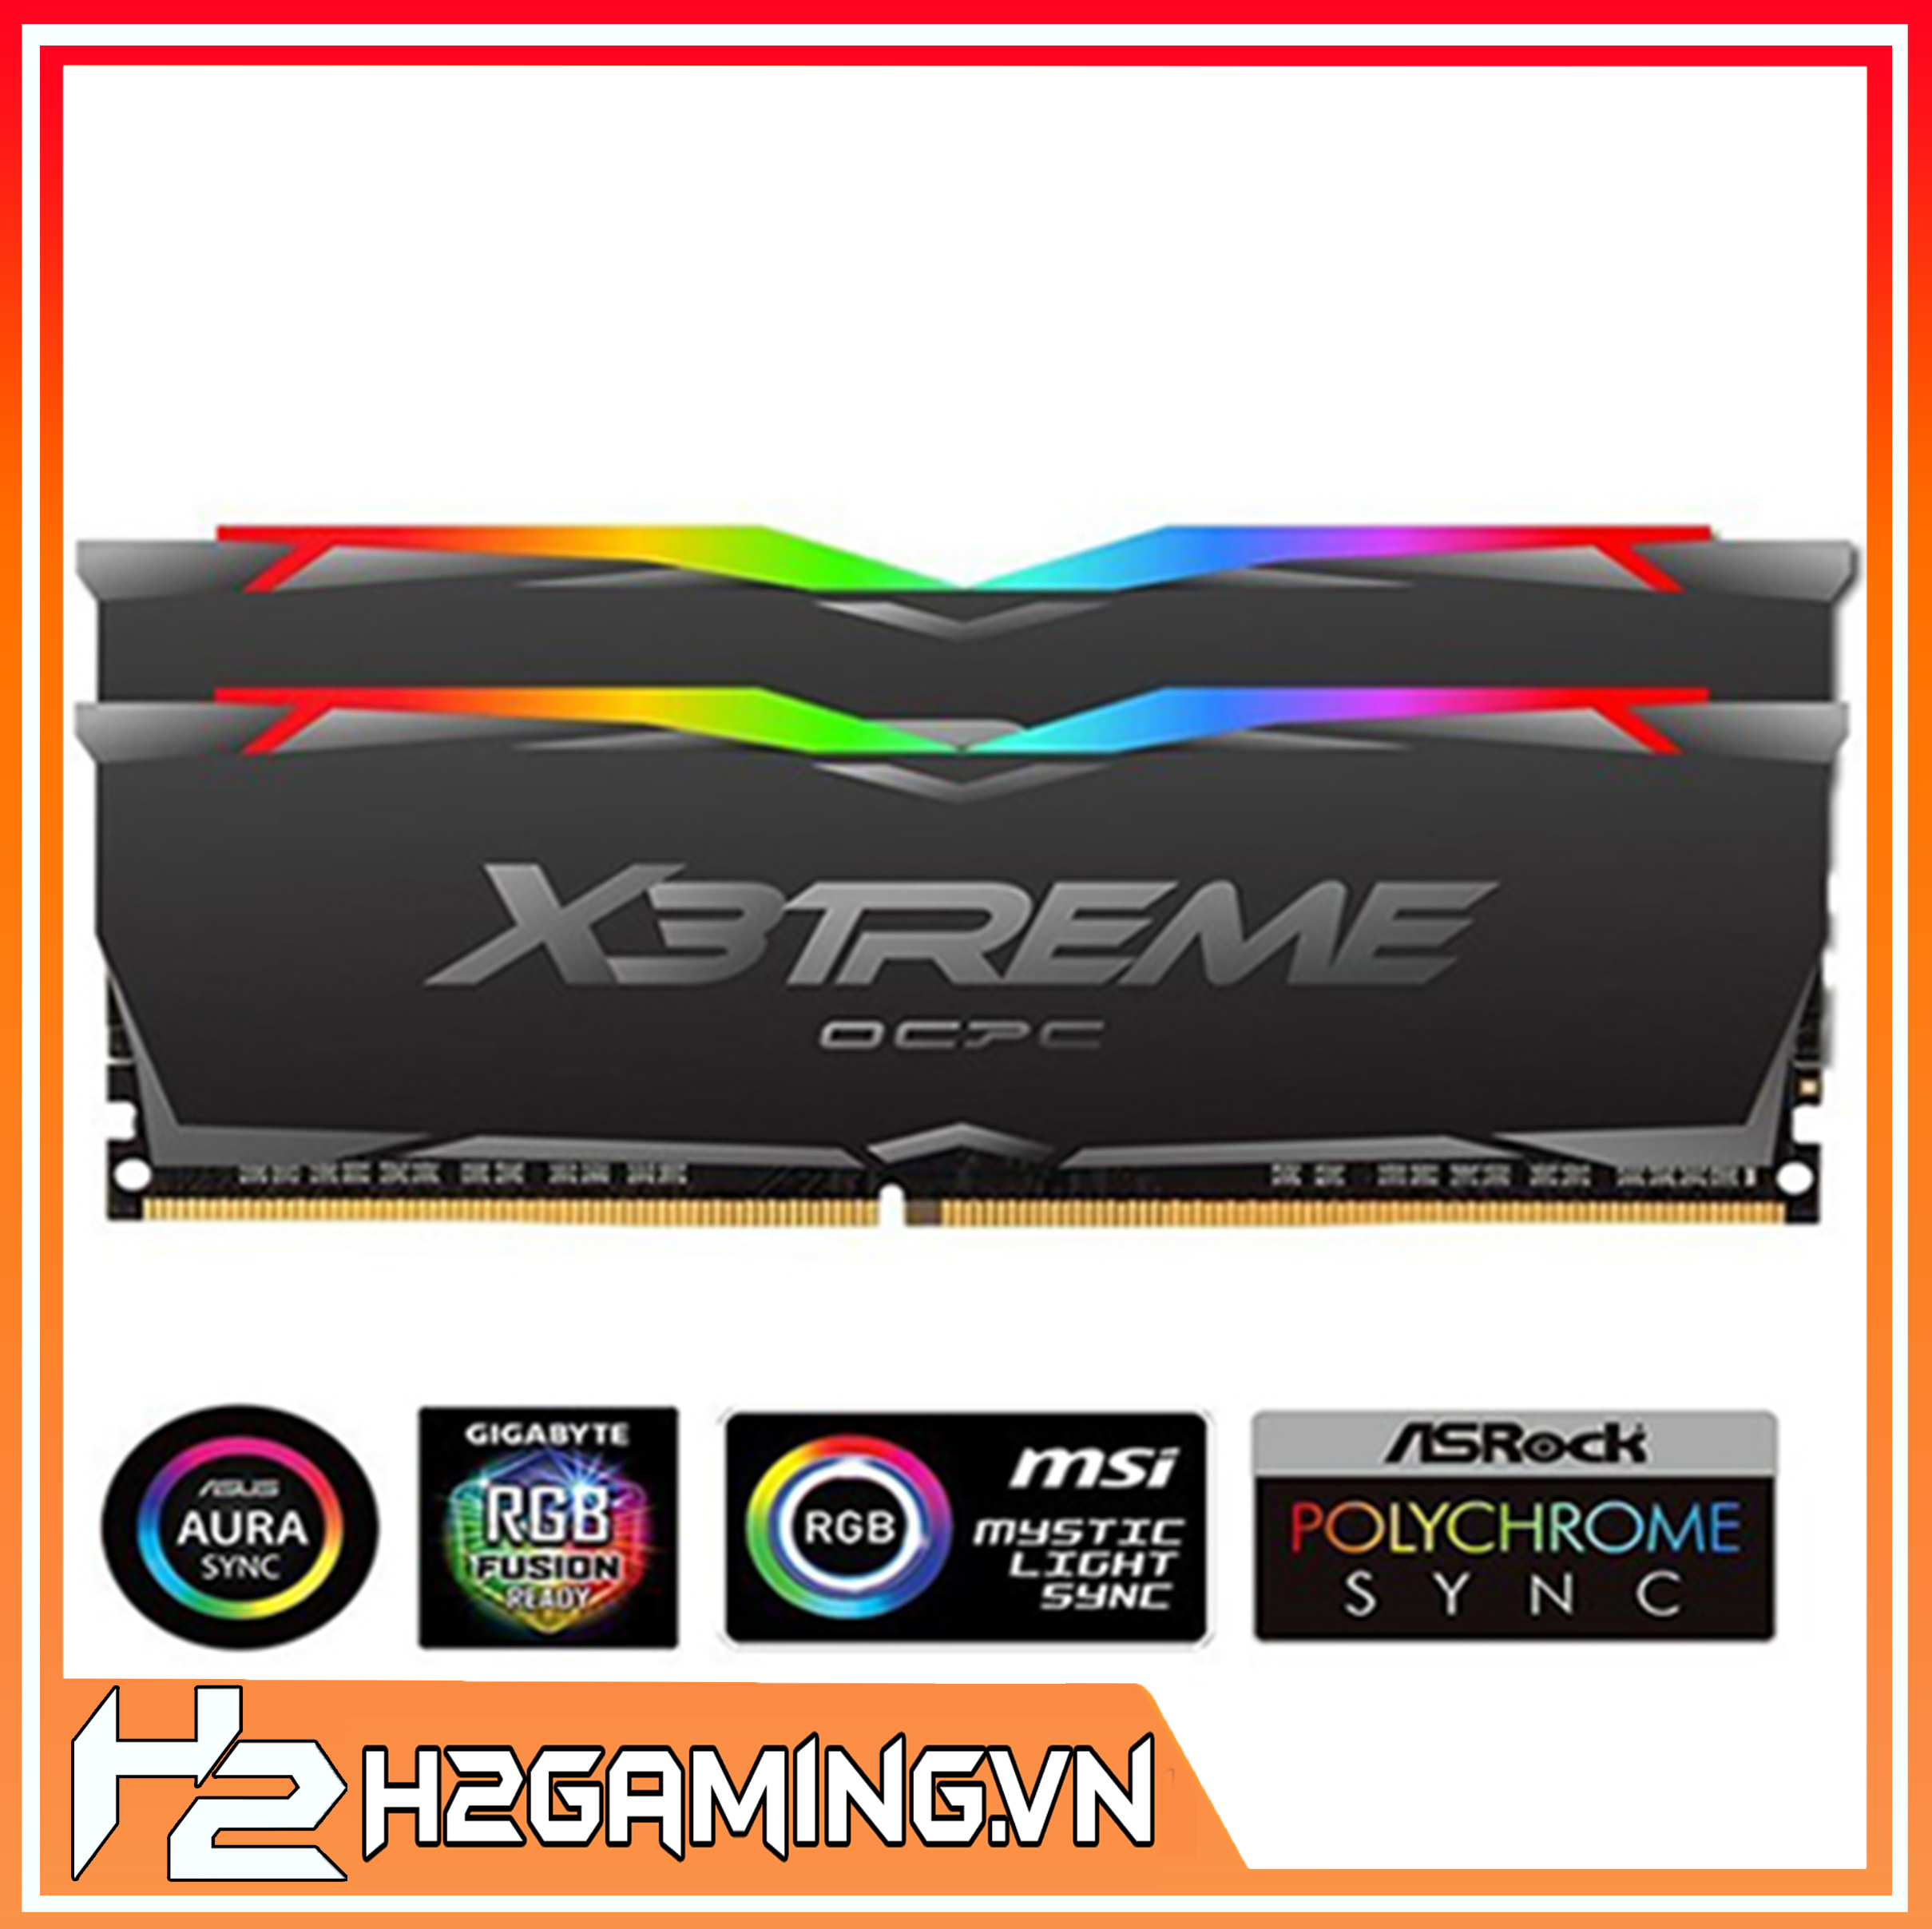 DDR4_X3treme_Aura_RGB_3200_C16_8G2_OCPC